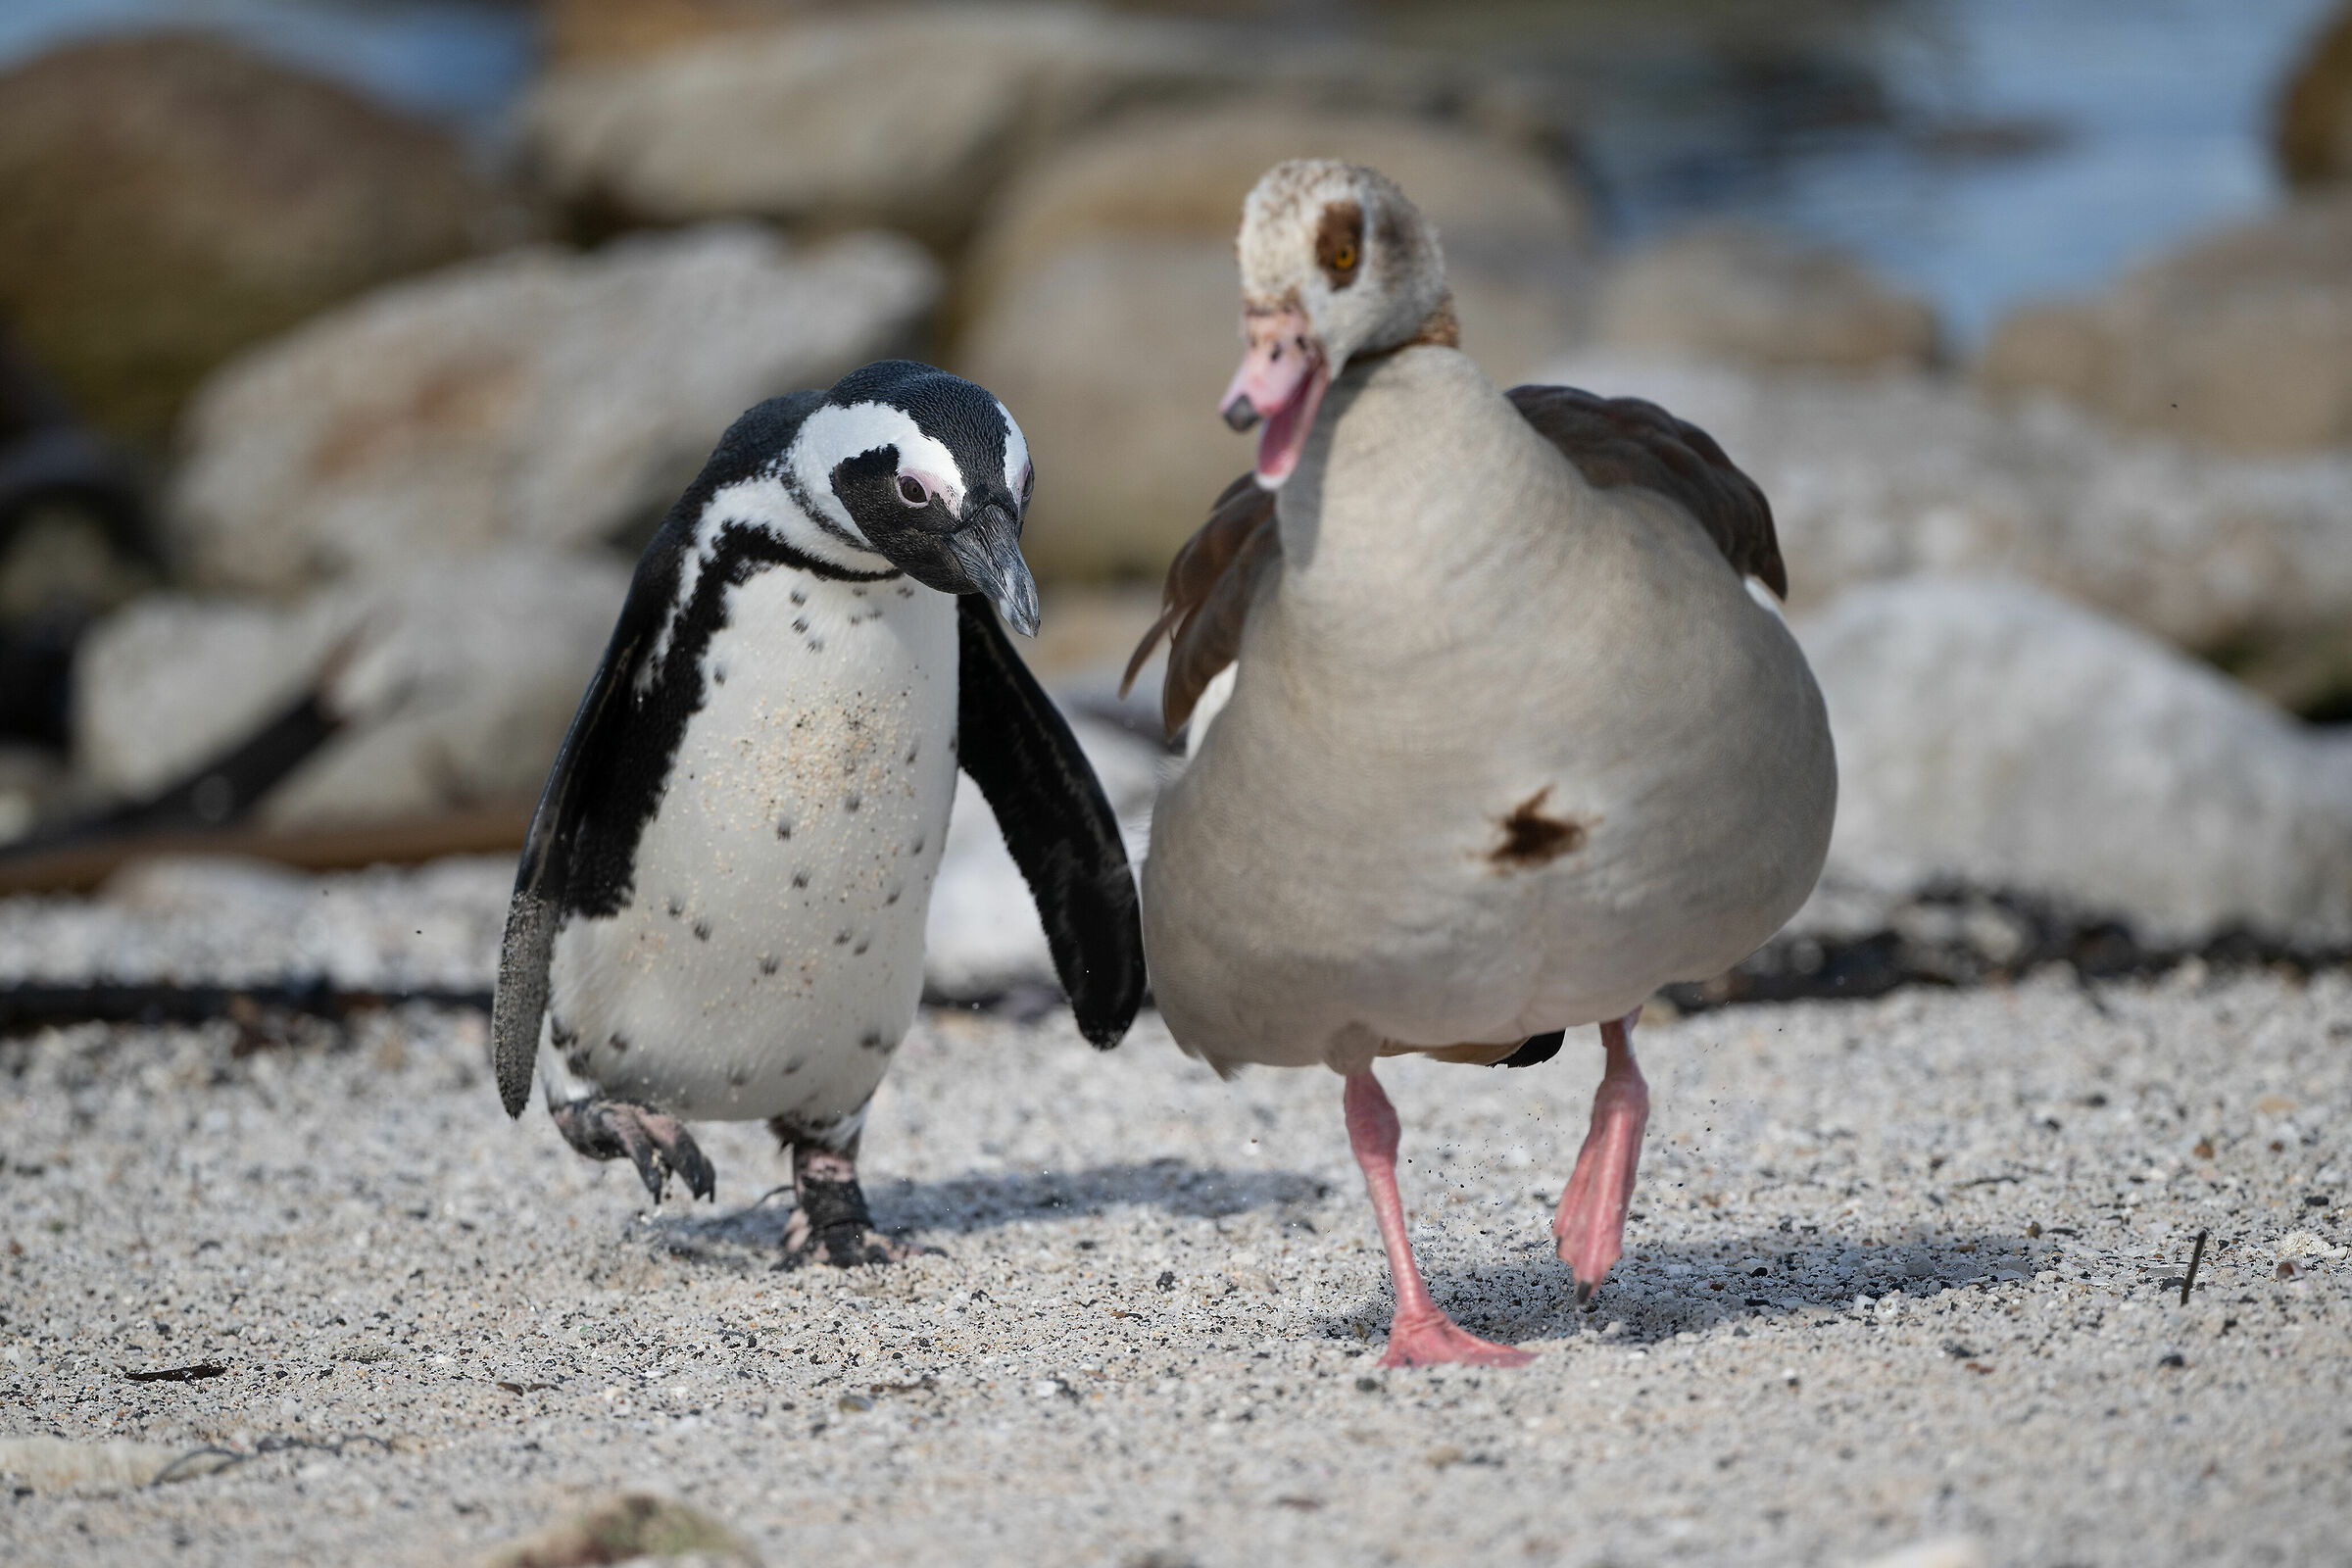 African Penguin vs Egyptian Goose...